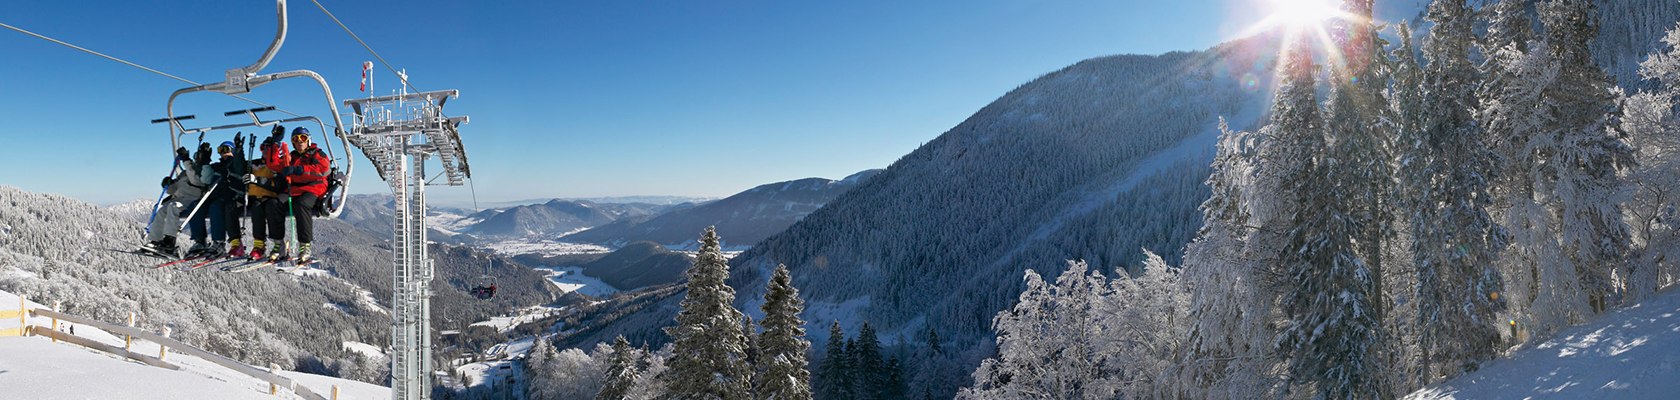 Mit der Sesselbahn ins Winterparadies, © NÖVOG/Zwickl